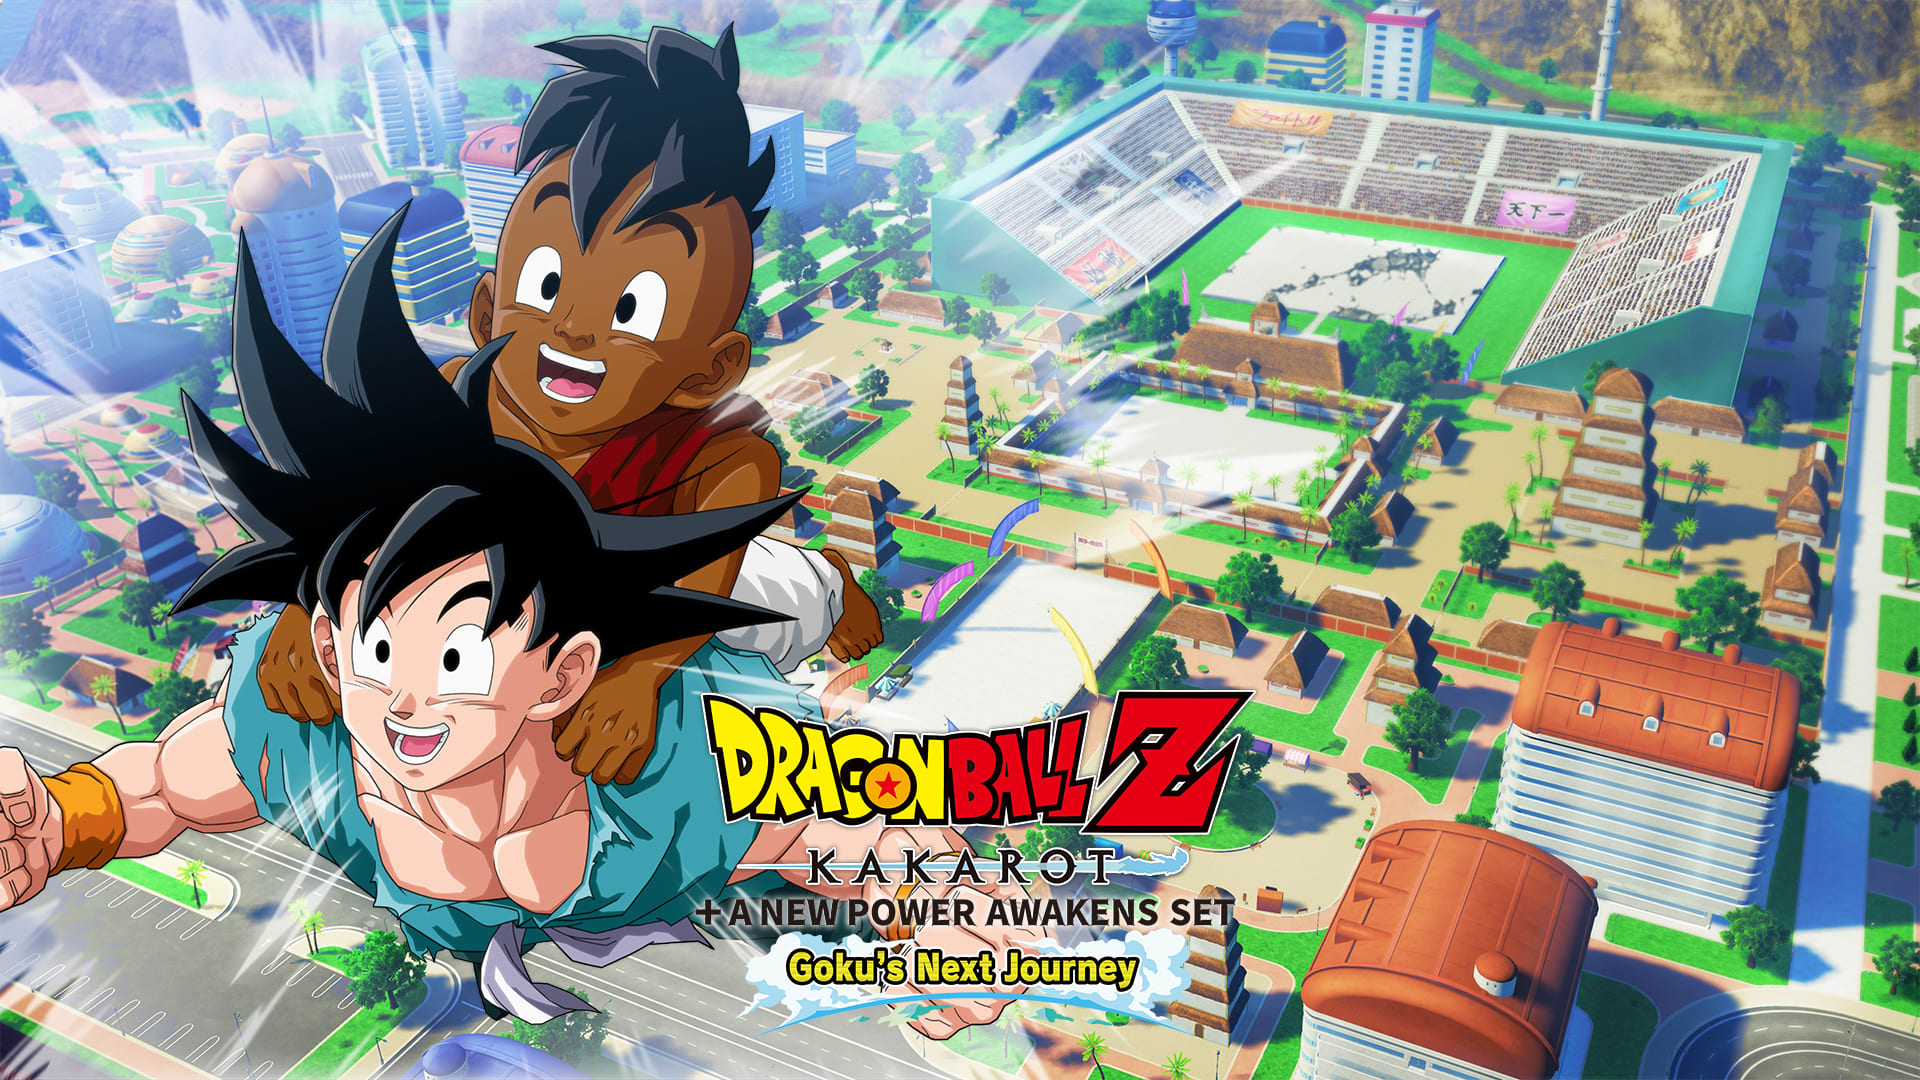 DRAGON BALL Z: KAKAROT + CONJUNTO EL DESPERTAR DE UN NUEVO PODER - La próxima aventura de Goku